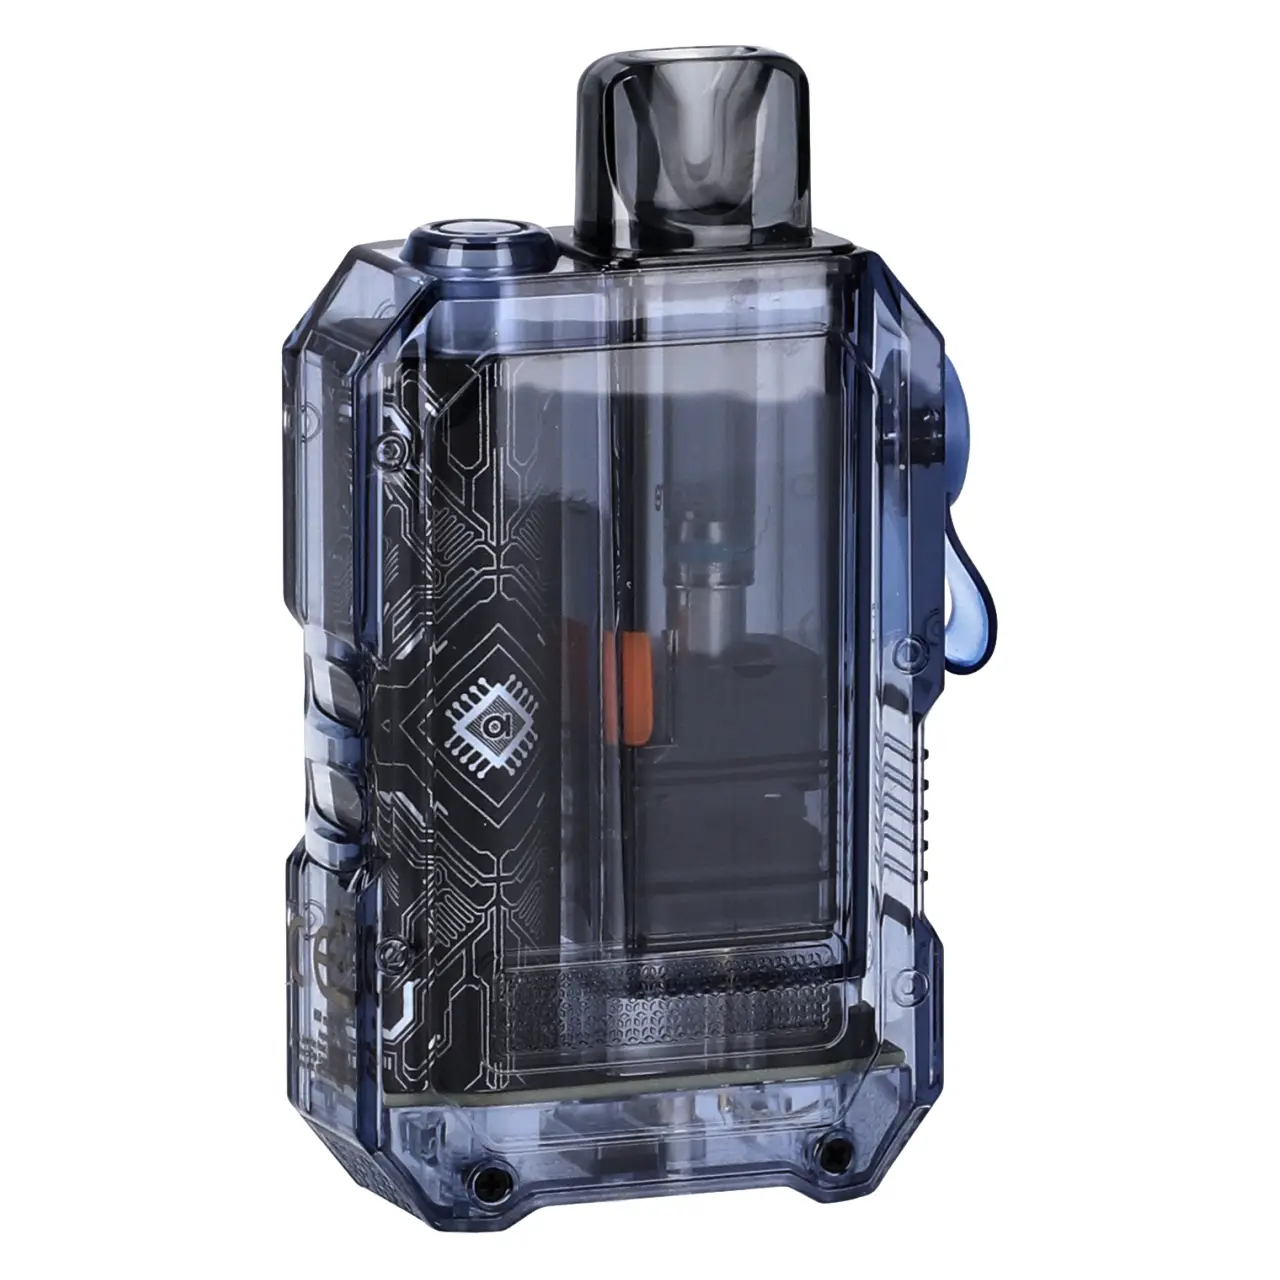 Aspire Gotek X E-Zigarette Transparent Blue - hinten